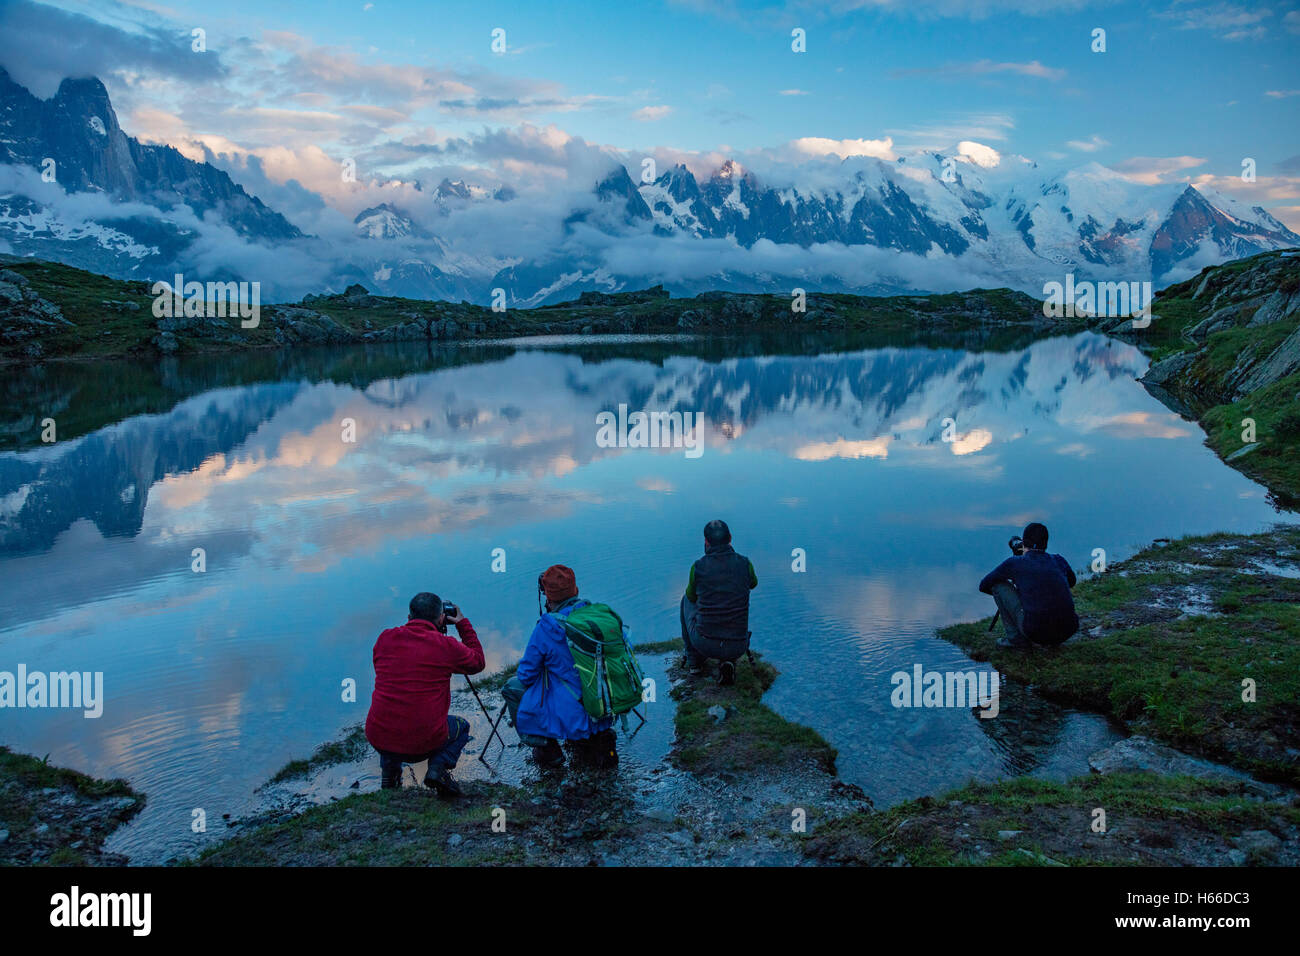 Fotografen neben Lac des Cheserys, unterhalb des Mont Blanc Massivs, das Tal von Chamonix, Französische Alpen, Frankreich. Stockfoto